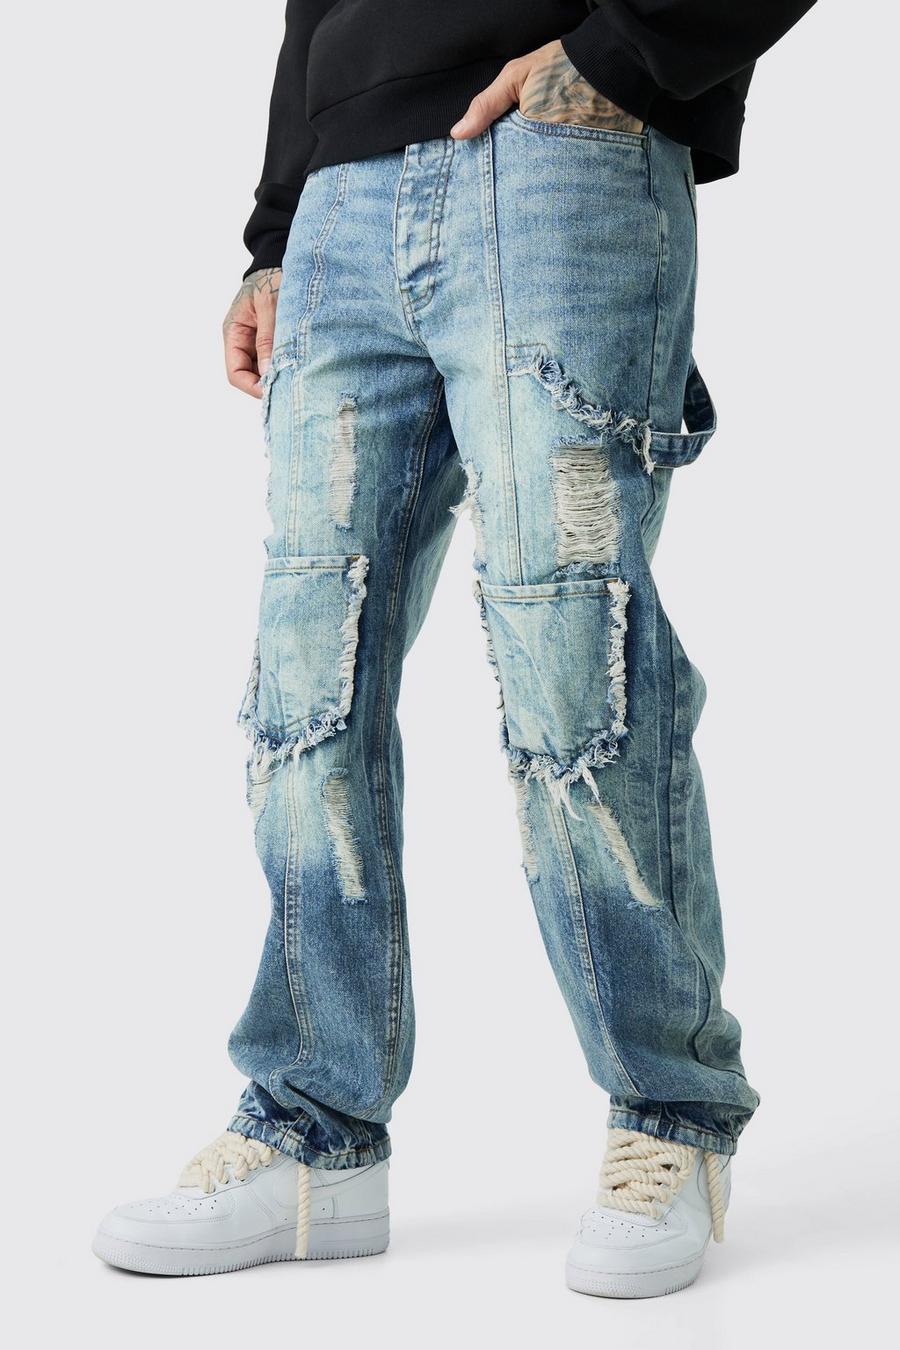 Jeans Cargo Tall rilassati in denim rigido con strappi, Antique blue